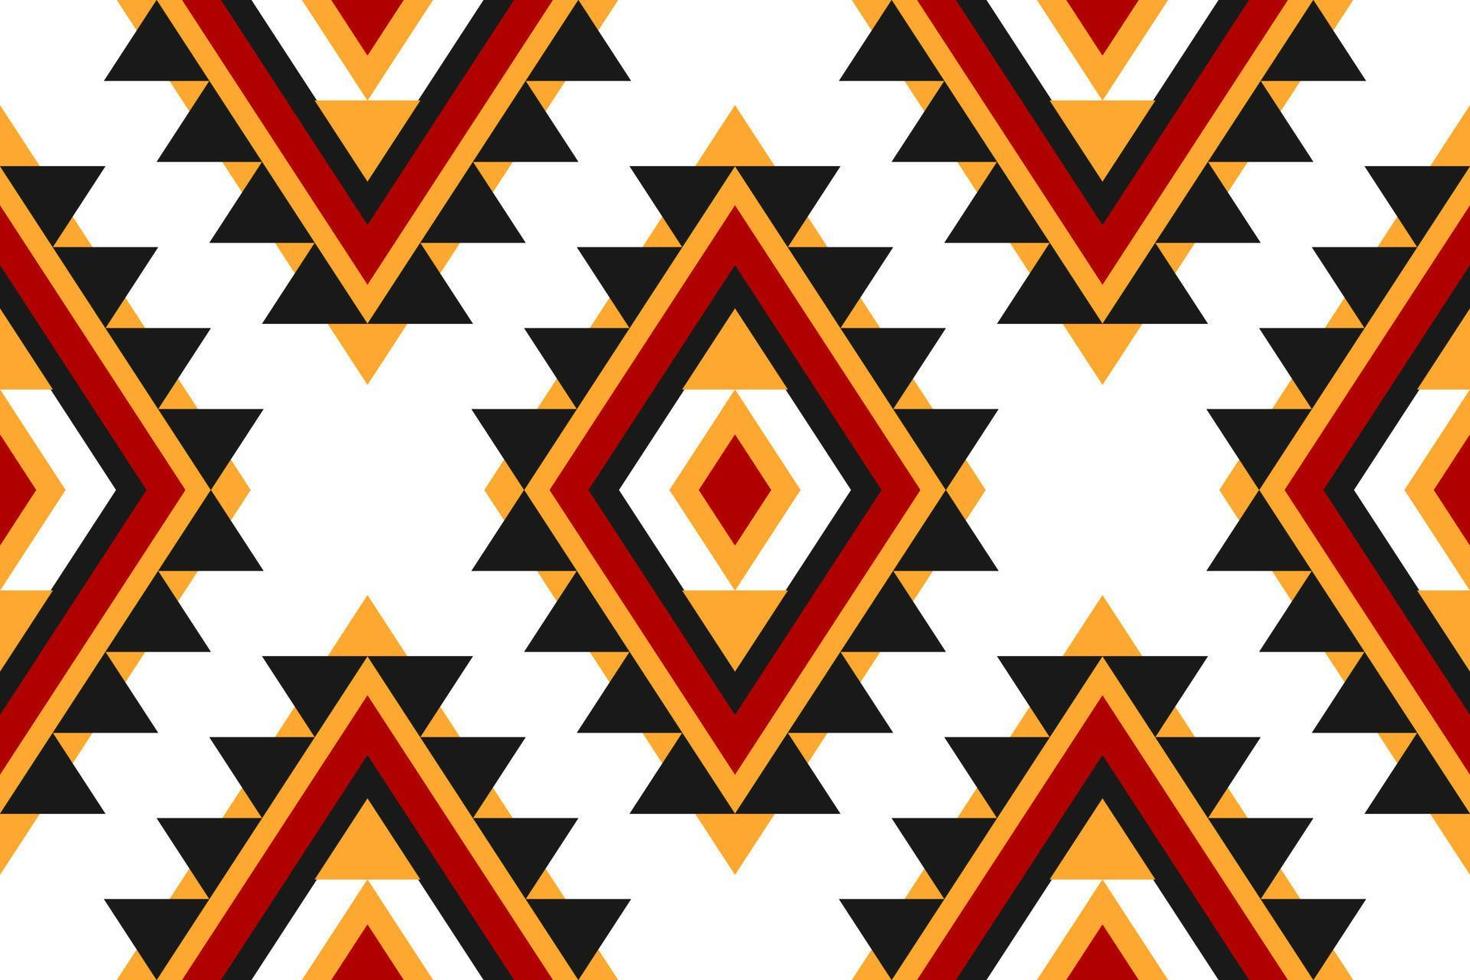 geometrisches ethnisches nahtloses muster traditionell. aztekischer ethnischer Ornamentdruck. Stammesmuster-Stil. vektor